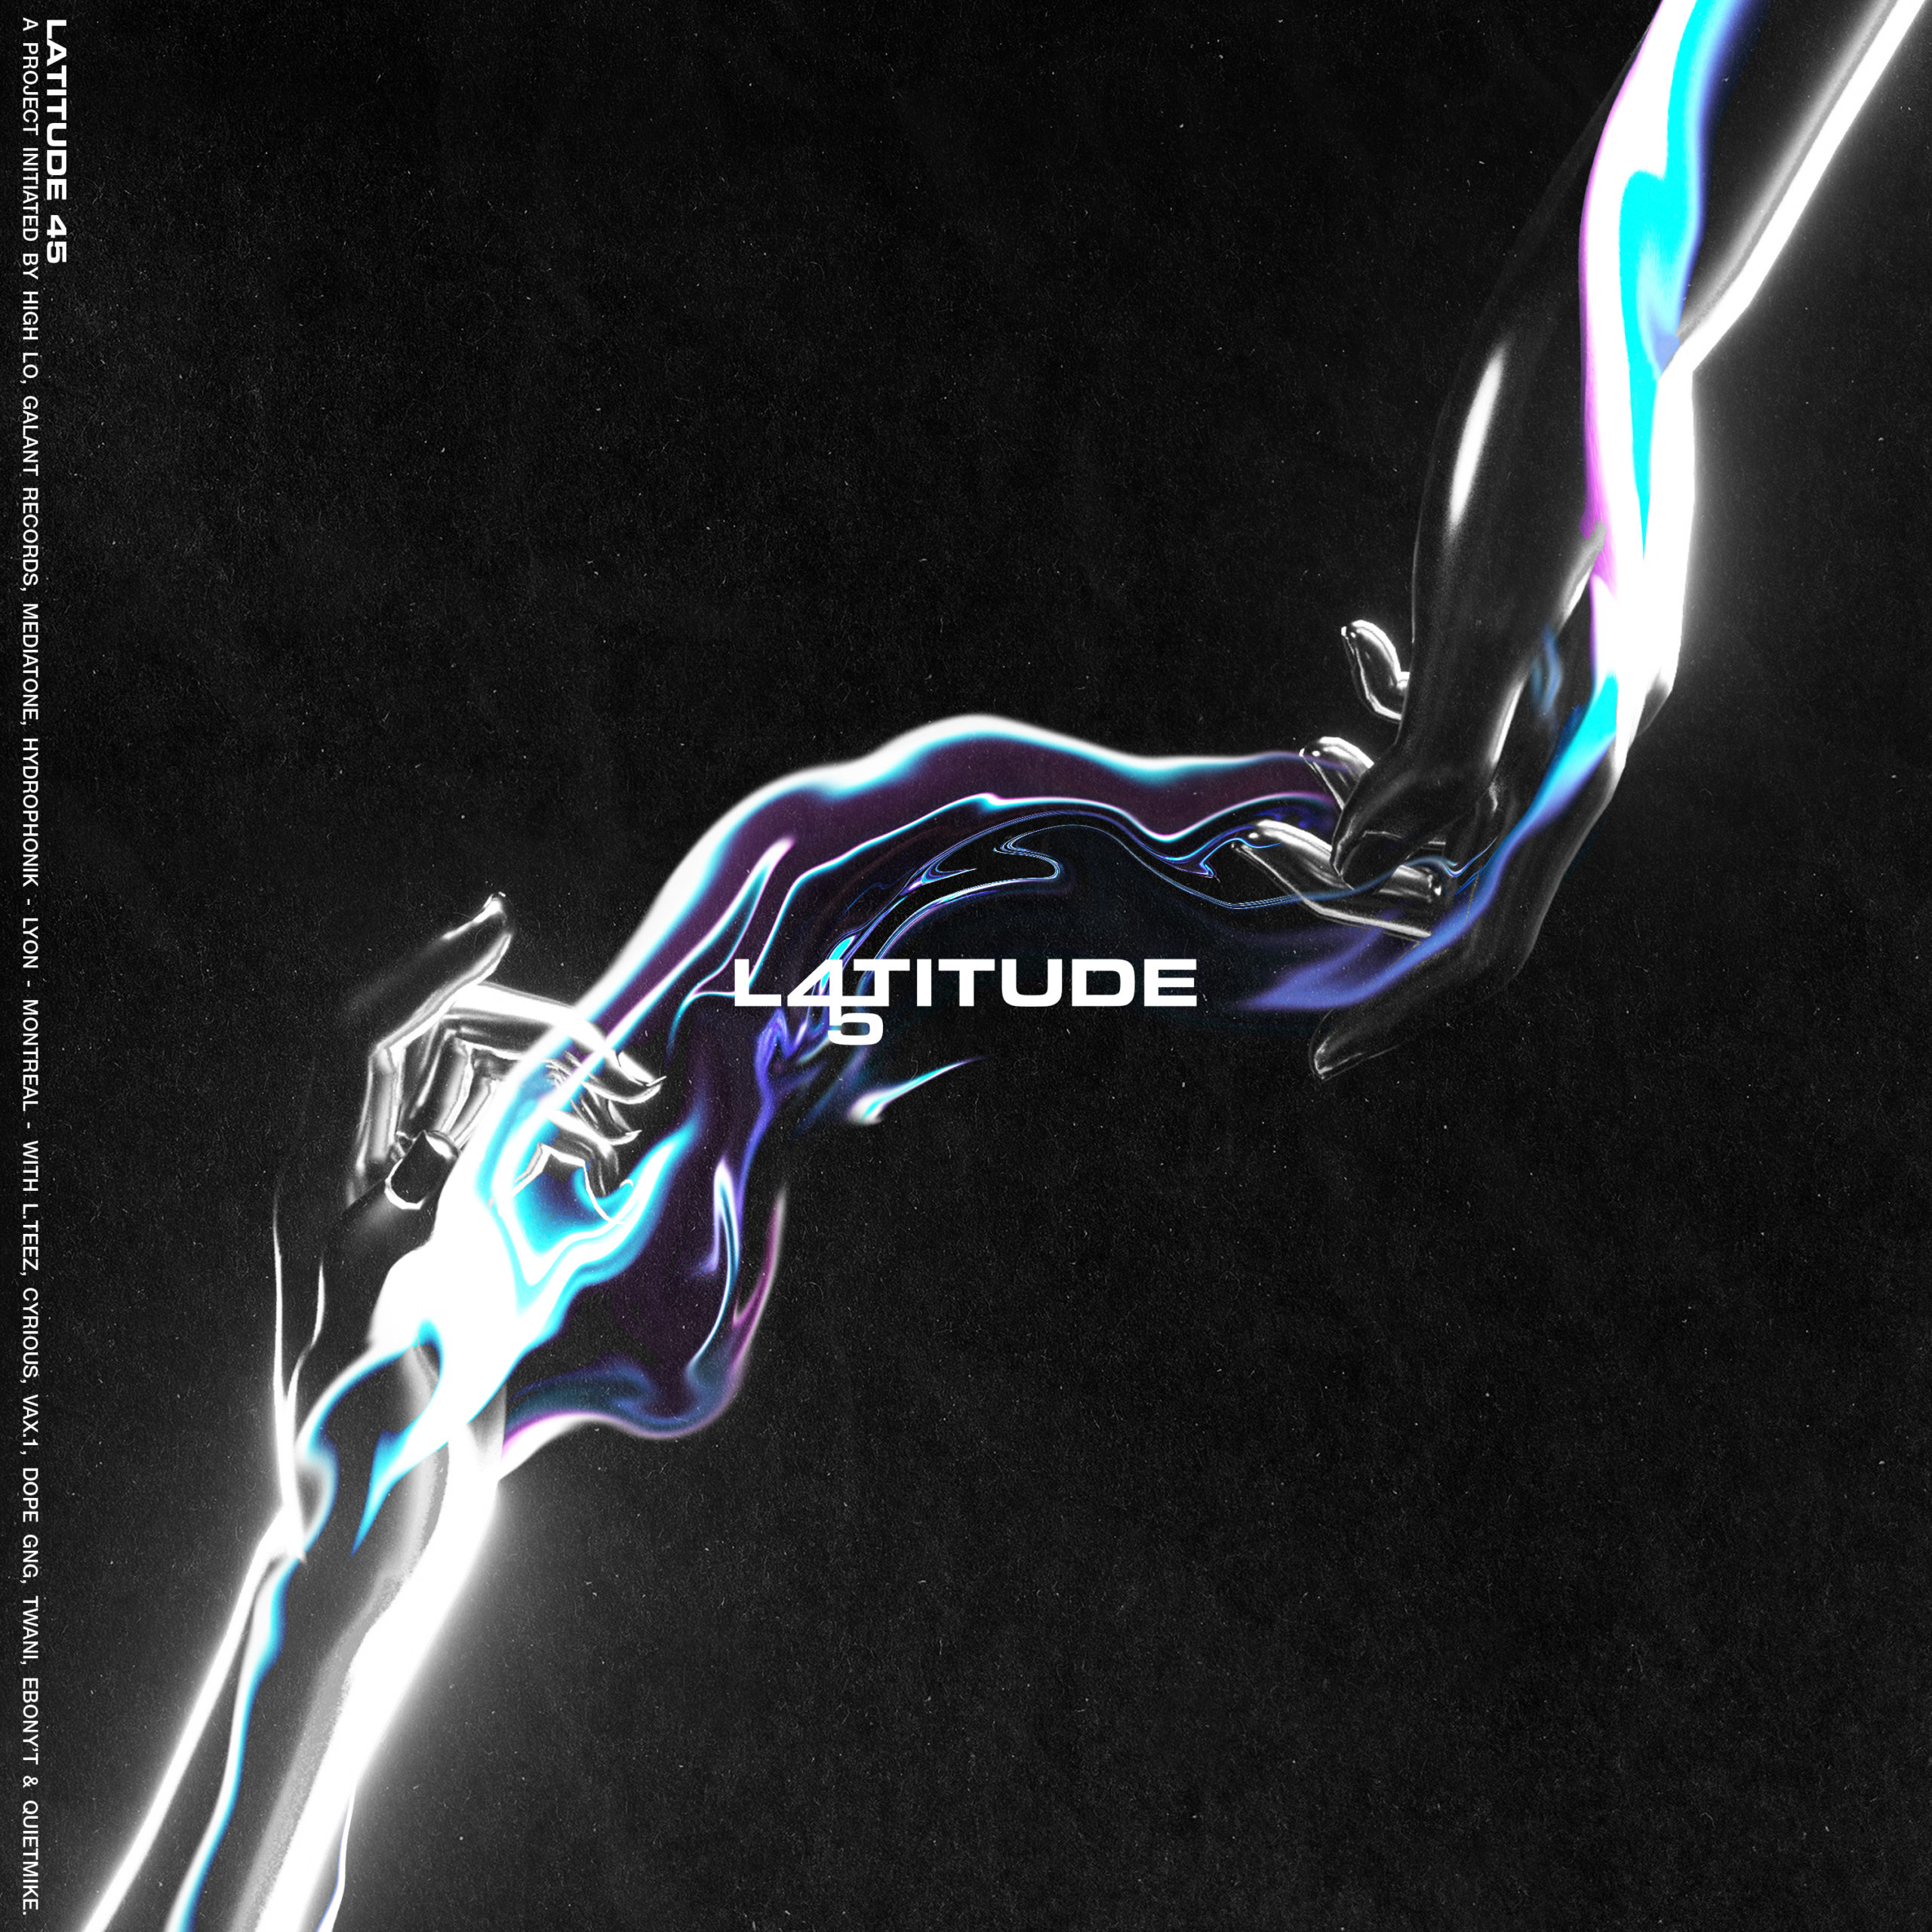 Latitude 45 révèle bientôt son premier EP !